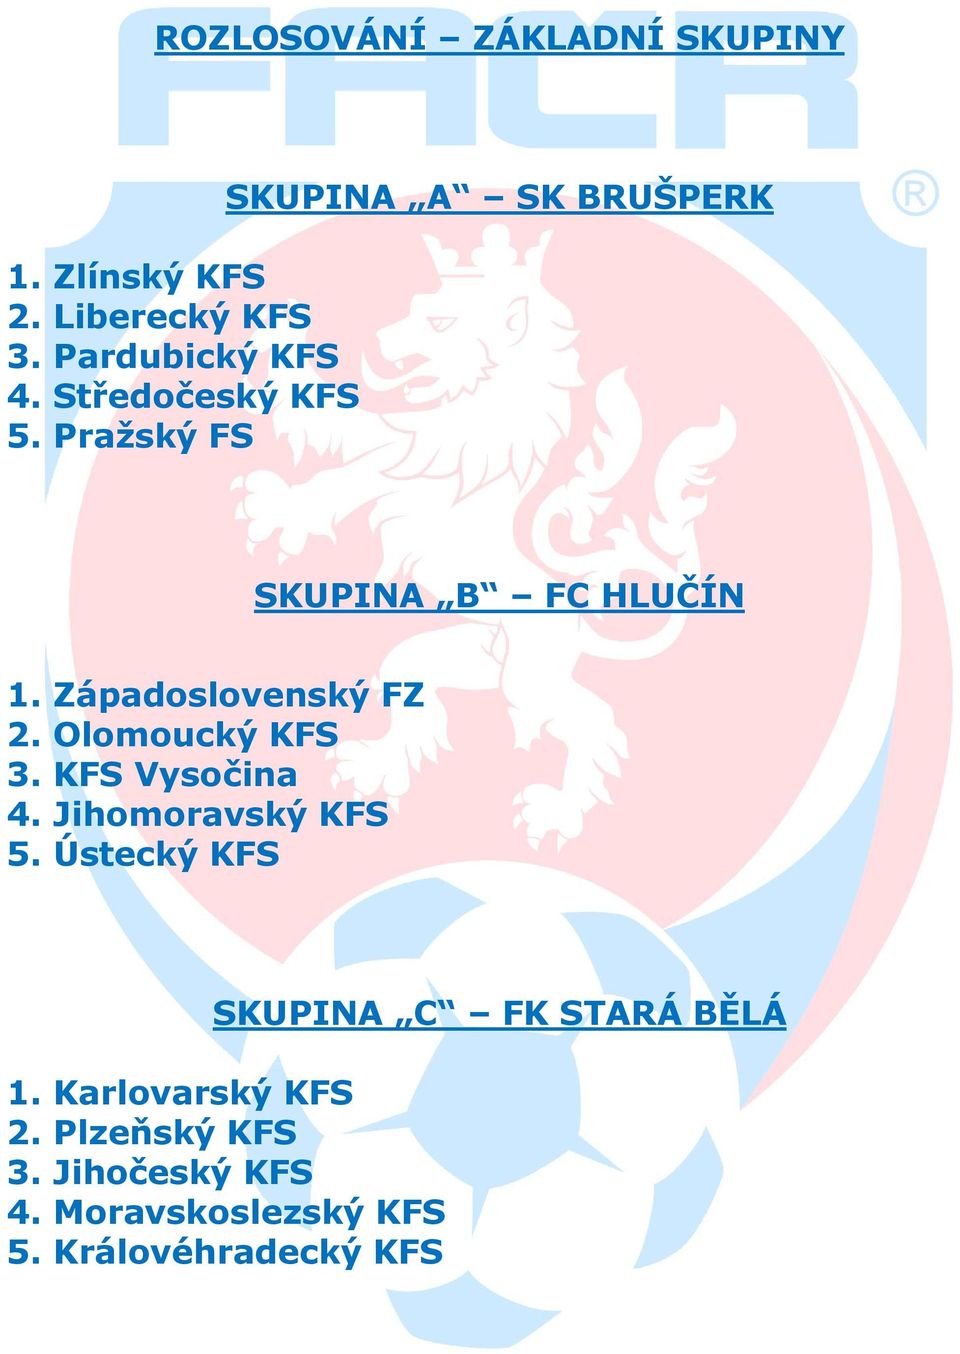 Západoslovenský FZ 2. Olomoucký KFS 3. KFS Vysočina 4. Jihomoravský KFS 5.